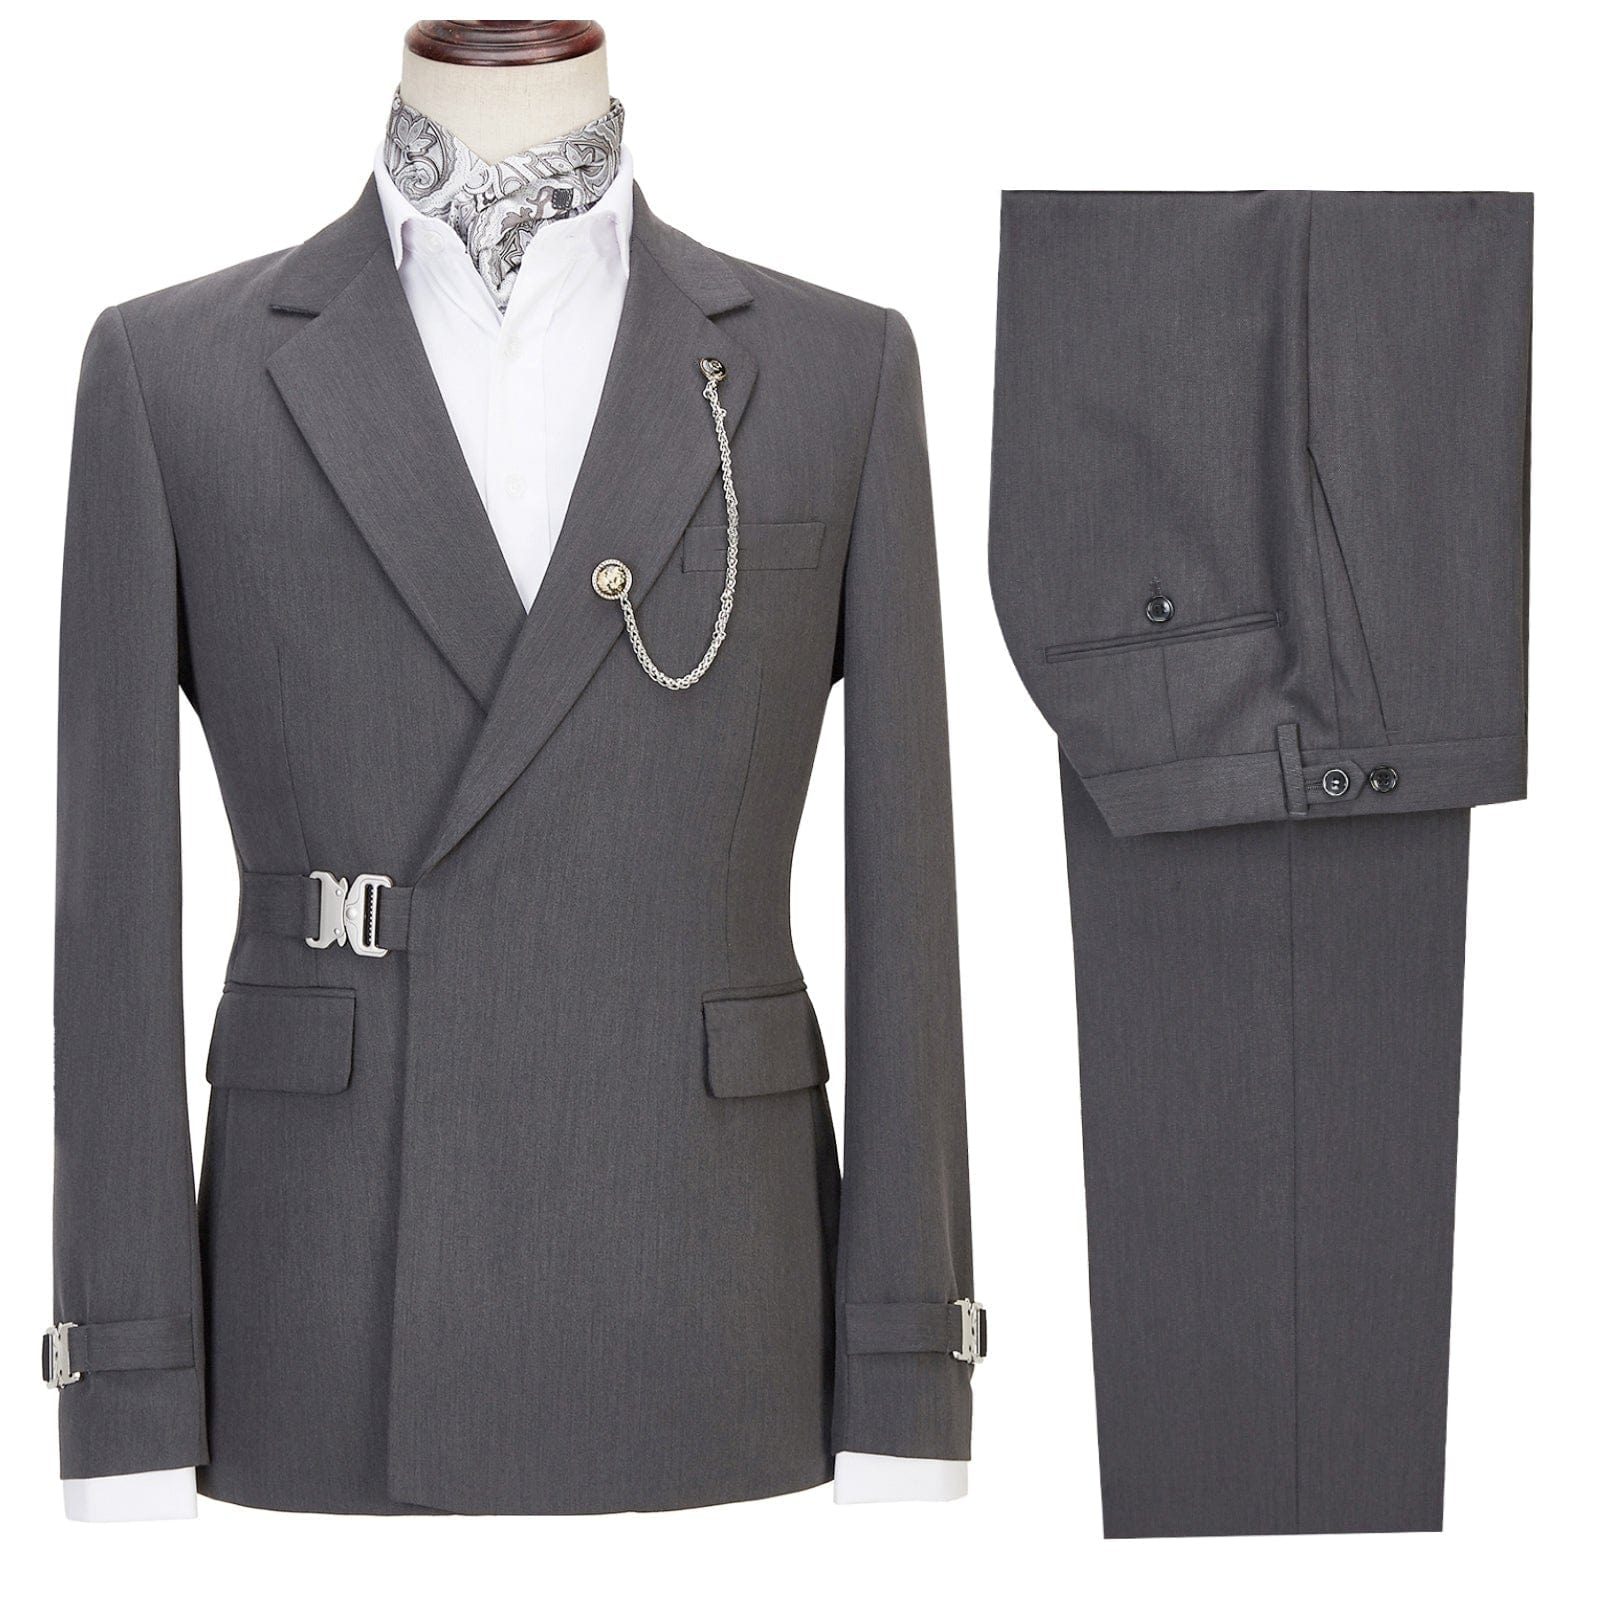 ceehuteey Men's 2 Piece Suit with Metal Clasp Slim Fit Suit Stylish Tuxedo Suit Set